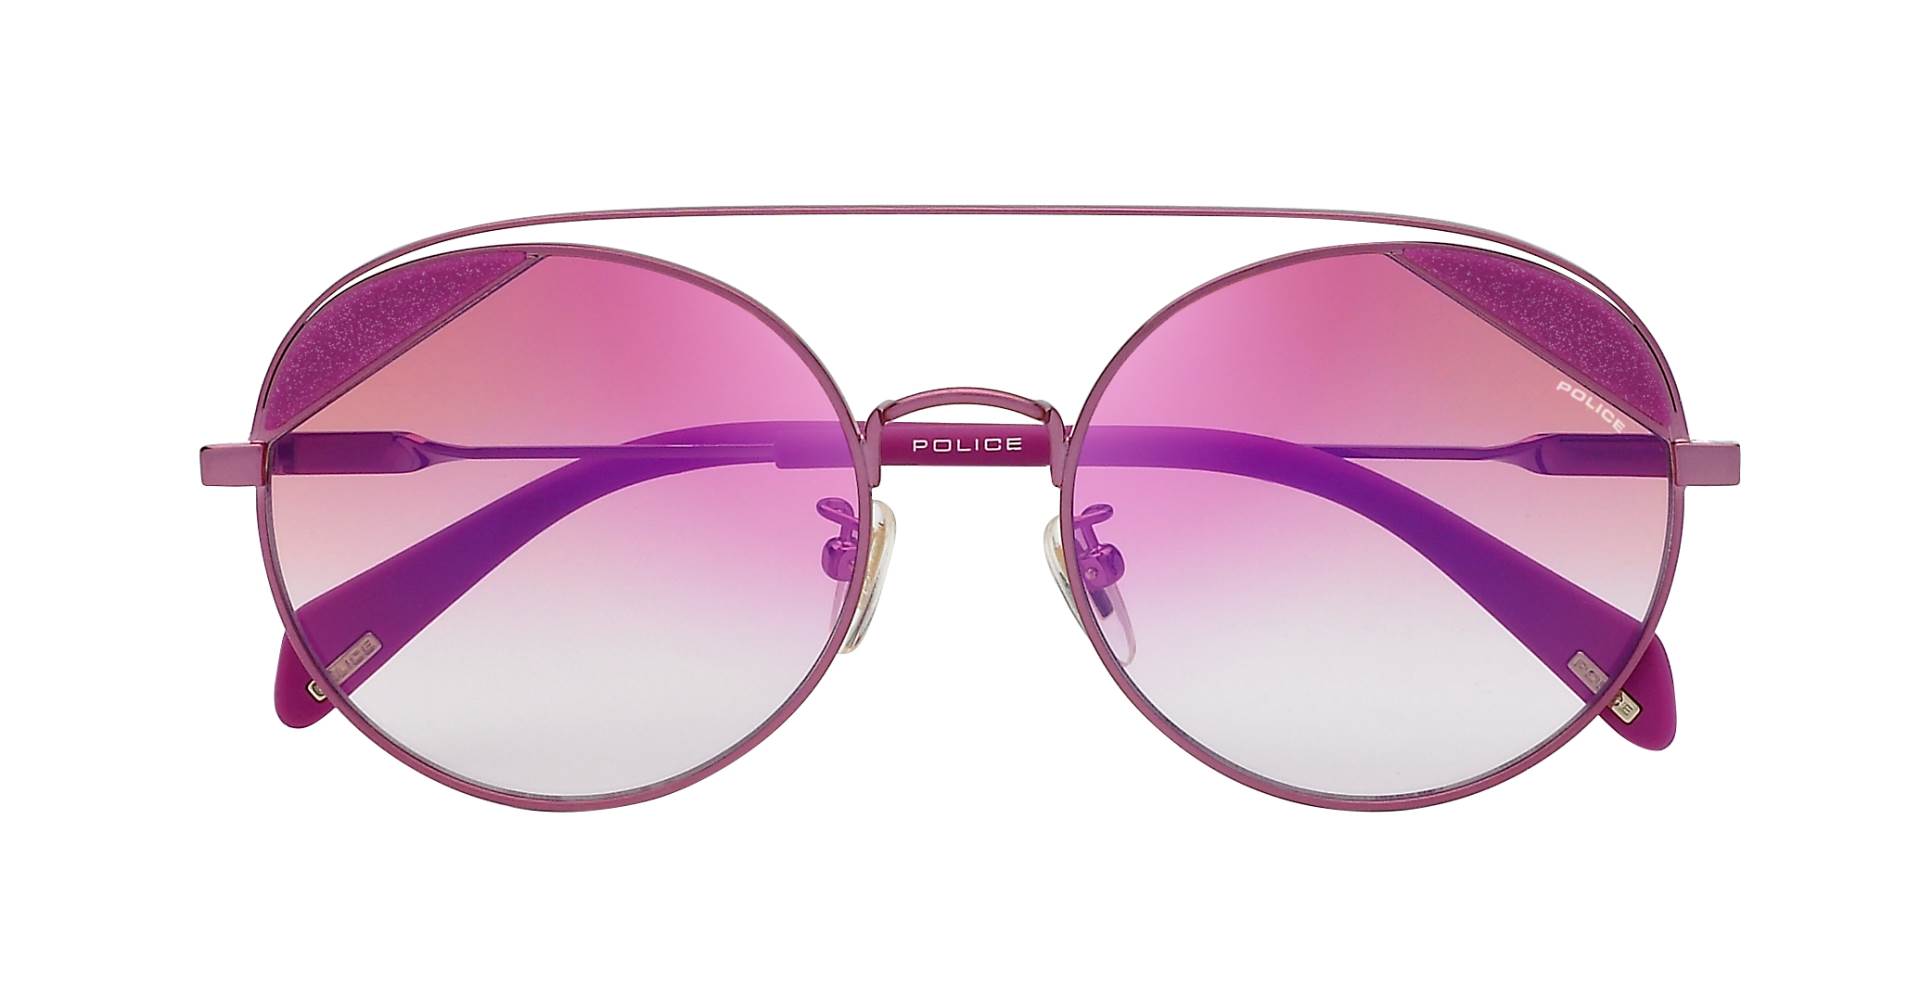 Talijanska modna tvrtka opet zablistala novom kolekcijom sunčanih naočala